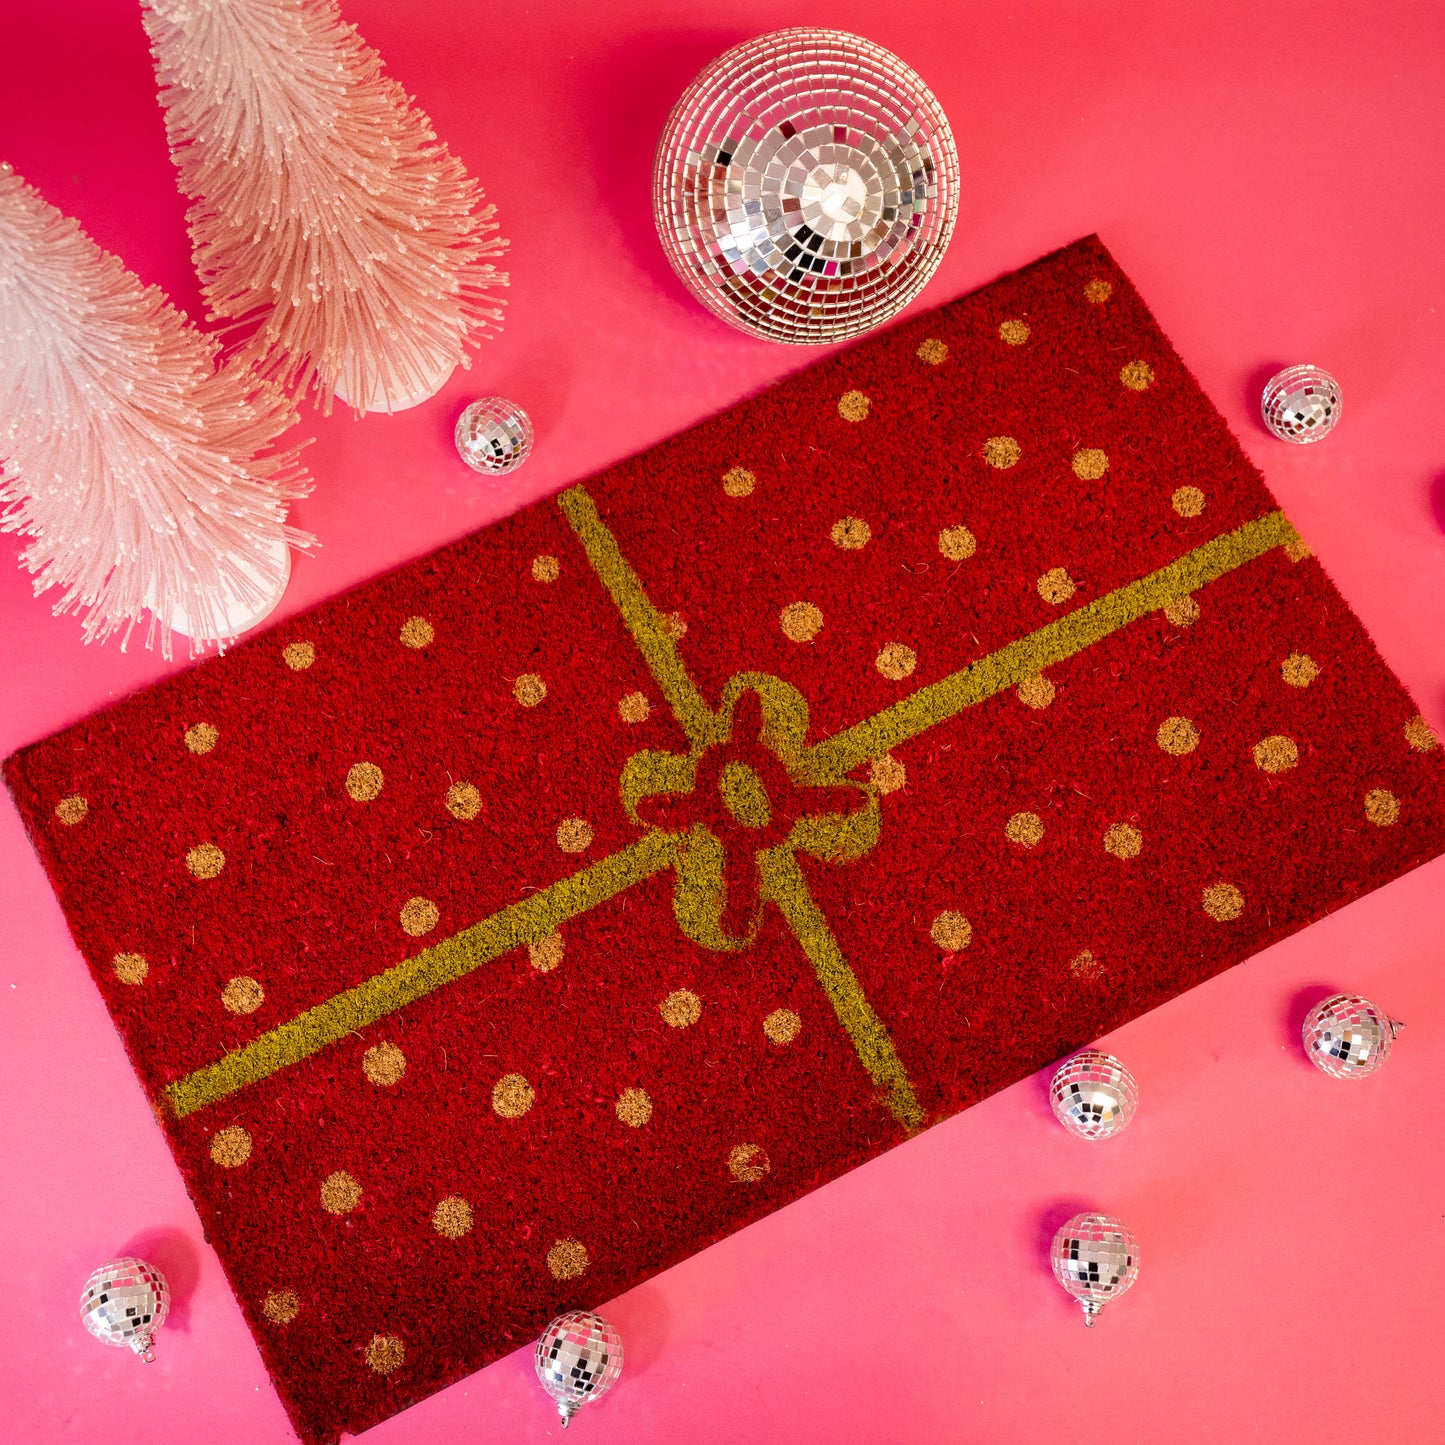 Christmas Package Doormat